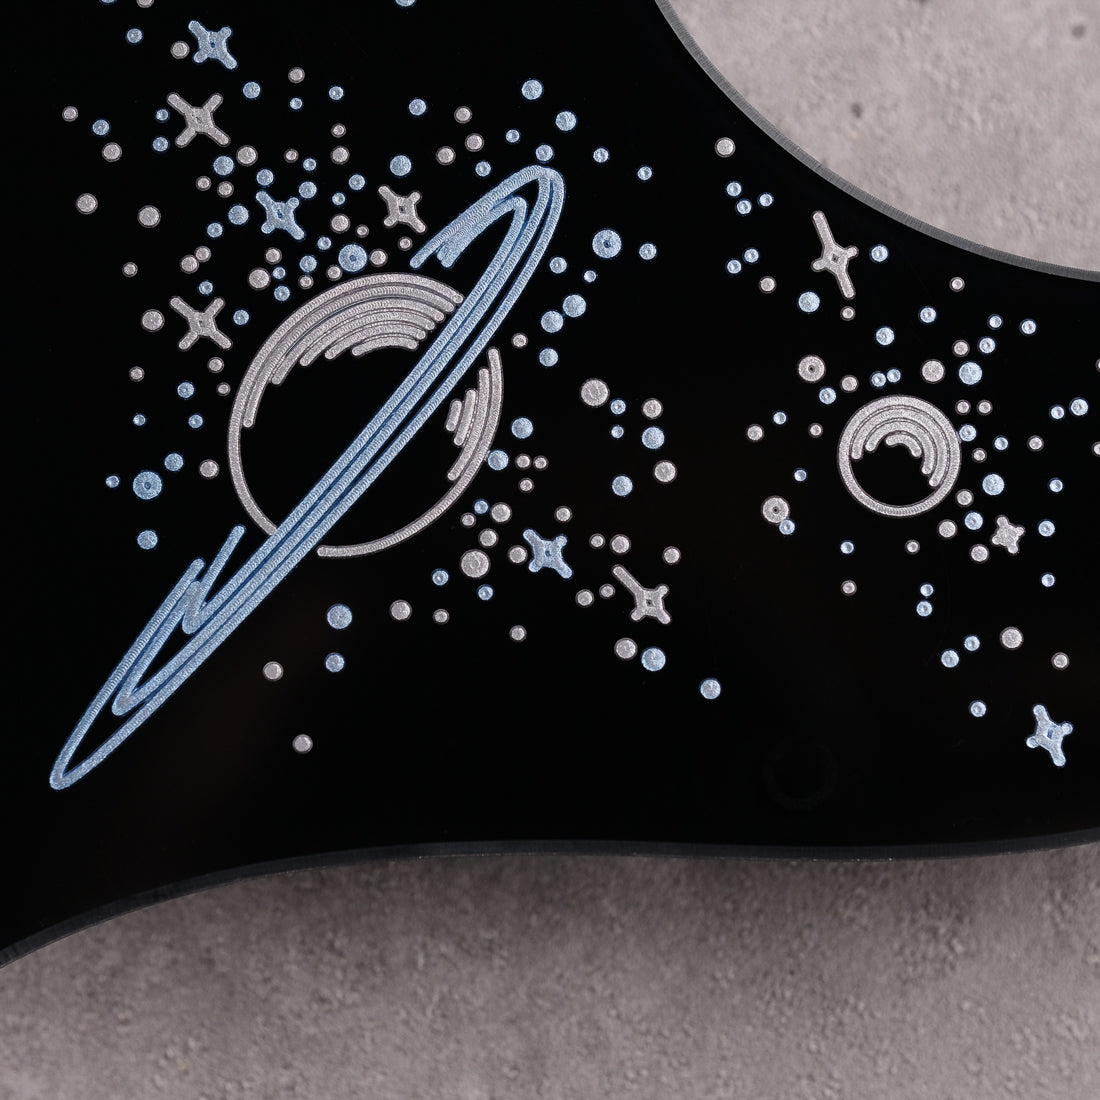 Space Oddity - Cabronita Pickguard - on Black Plexi